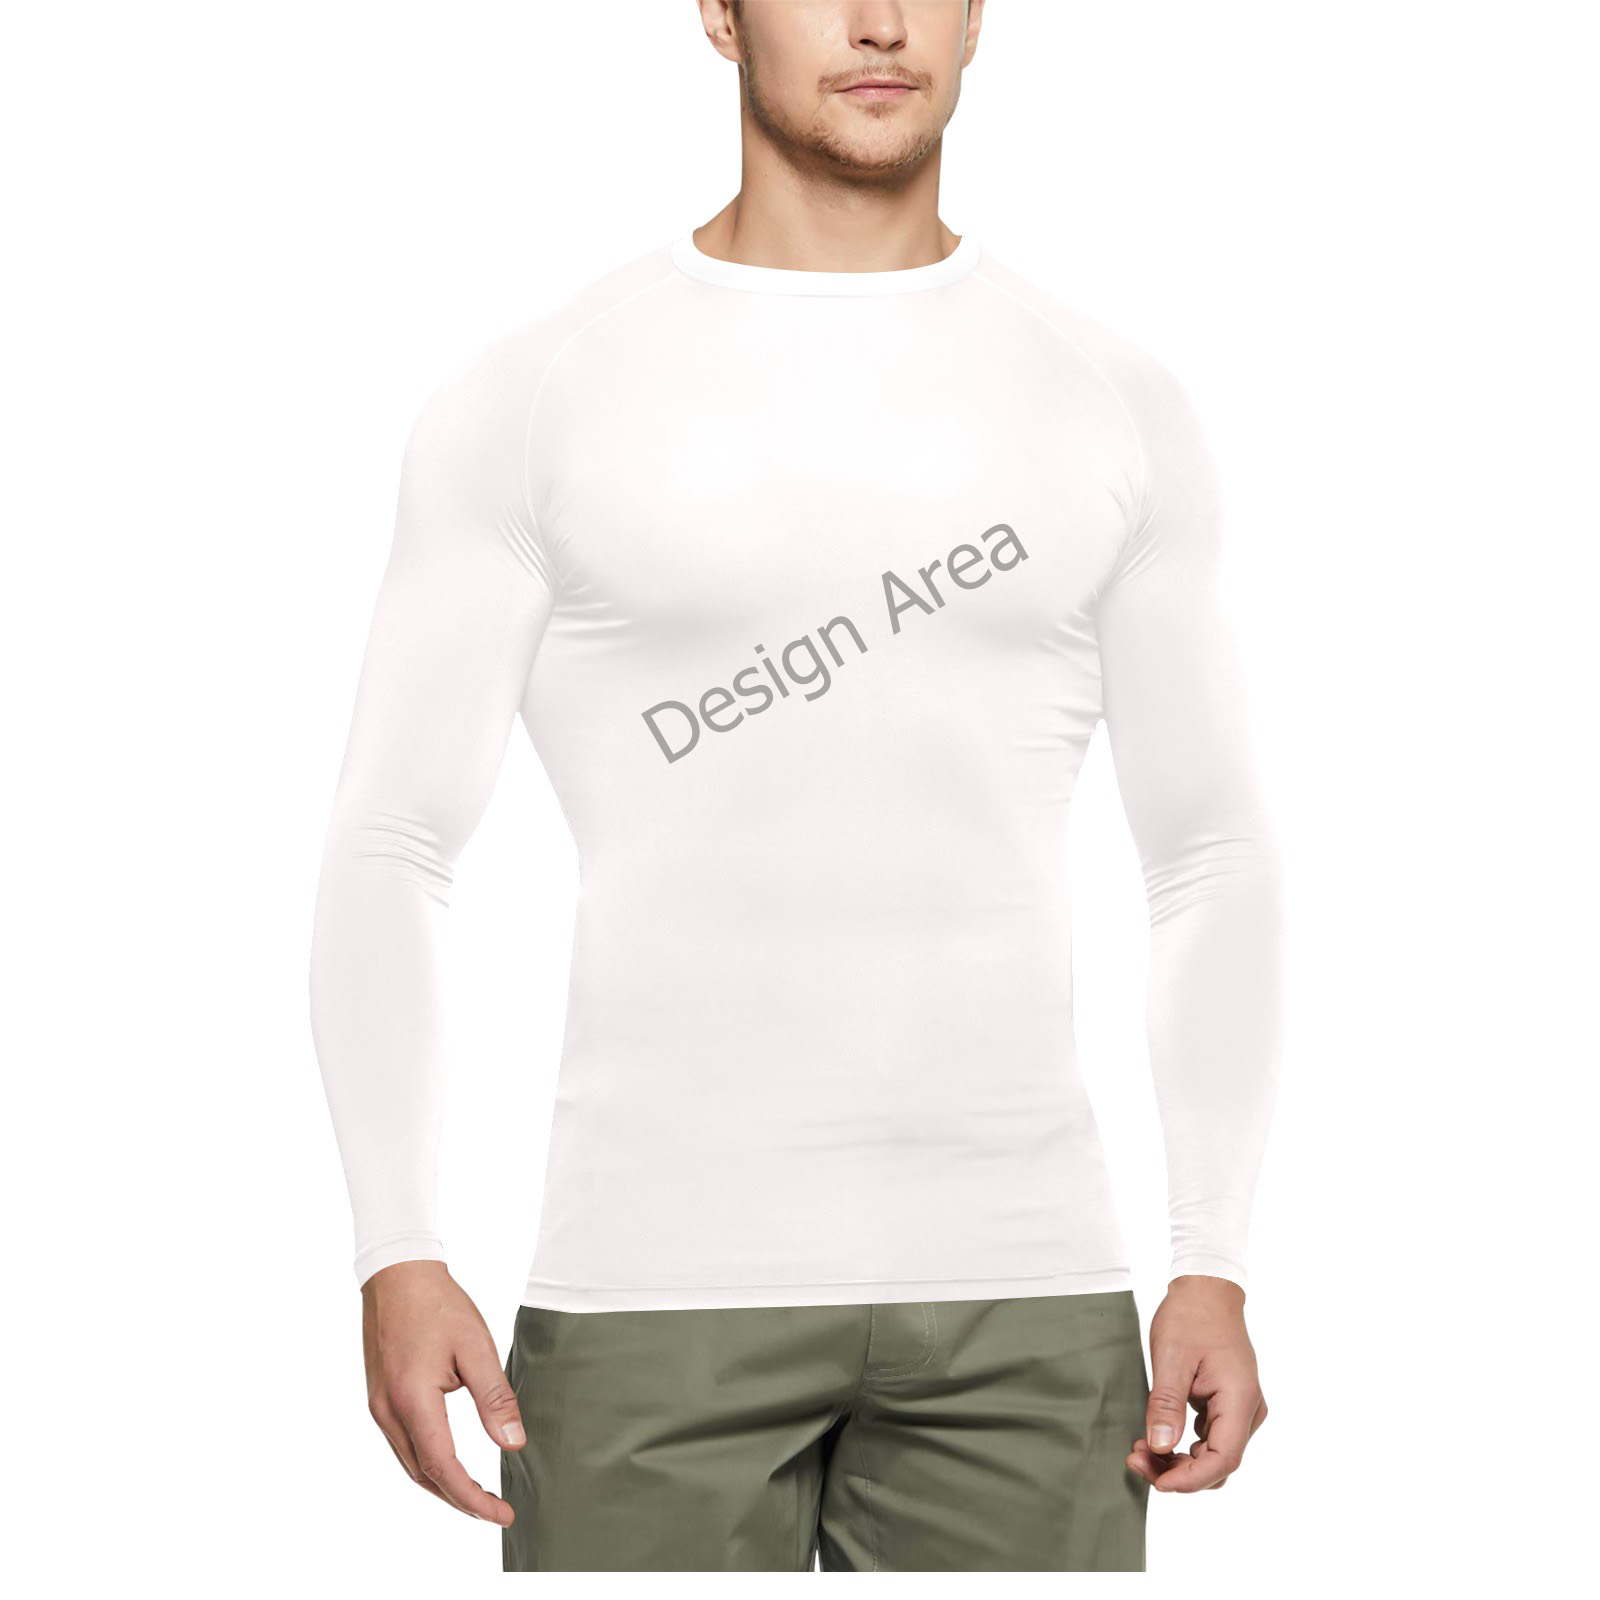 Men's Long Sleeve Swim Shirt (Model S39)